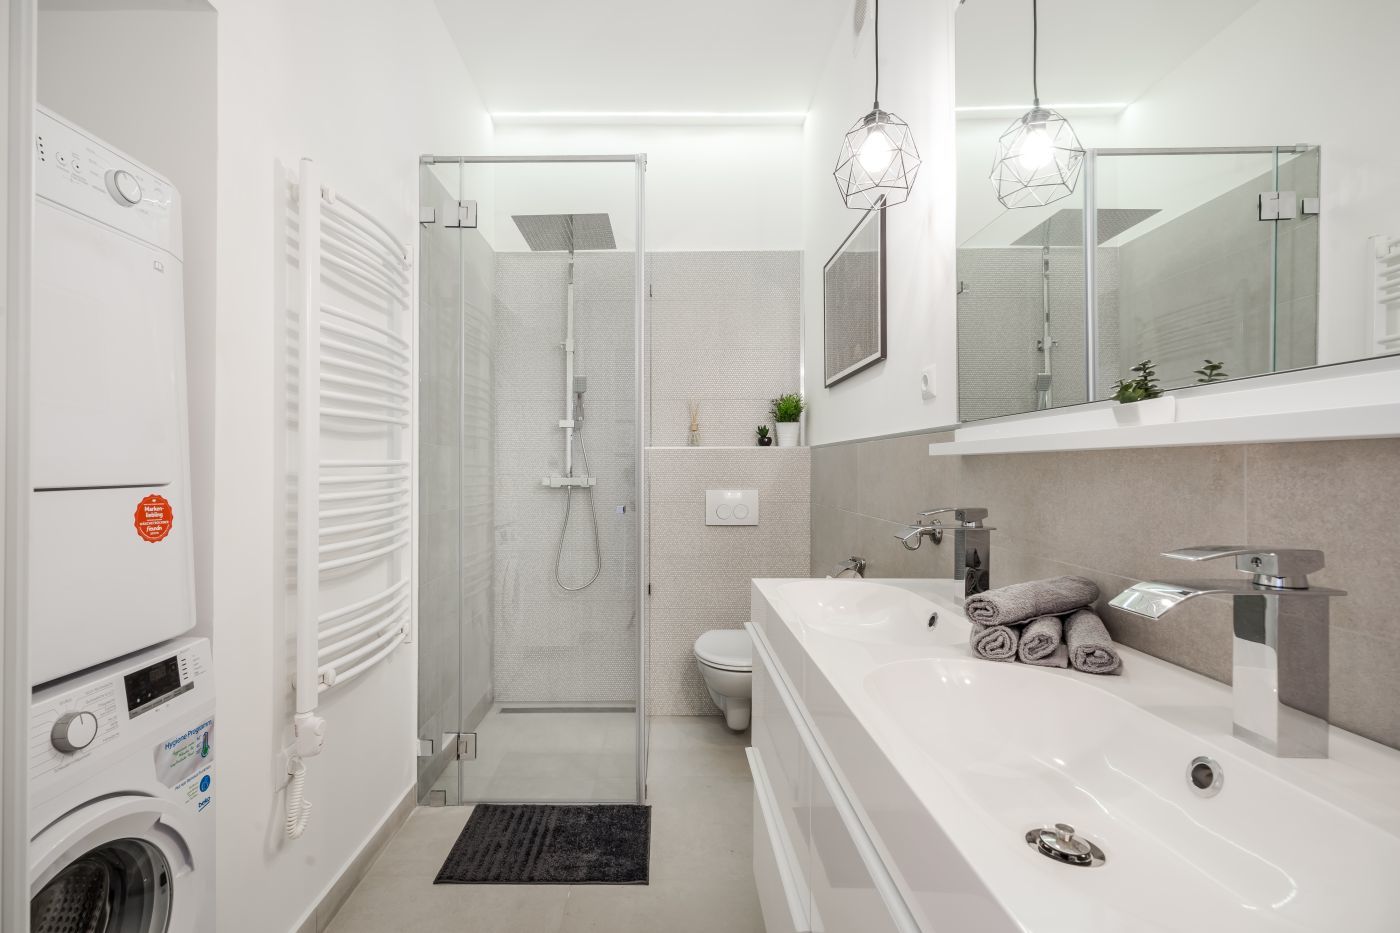 Fehér fürdőszoba kiadó lakásban - HGHome Lakberendezés